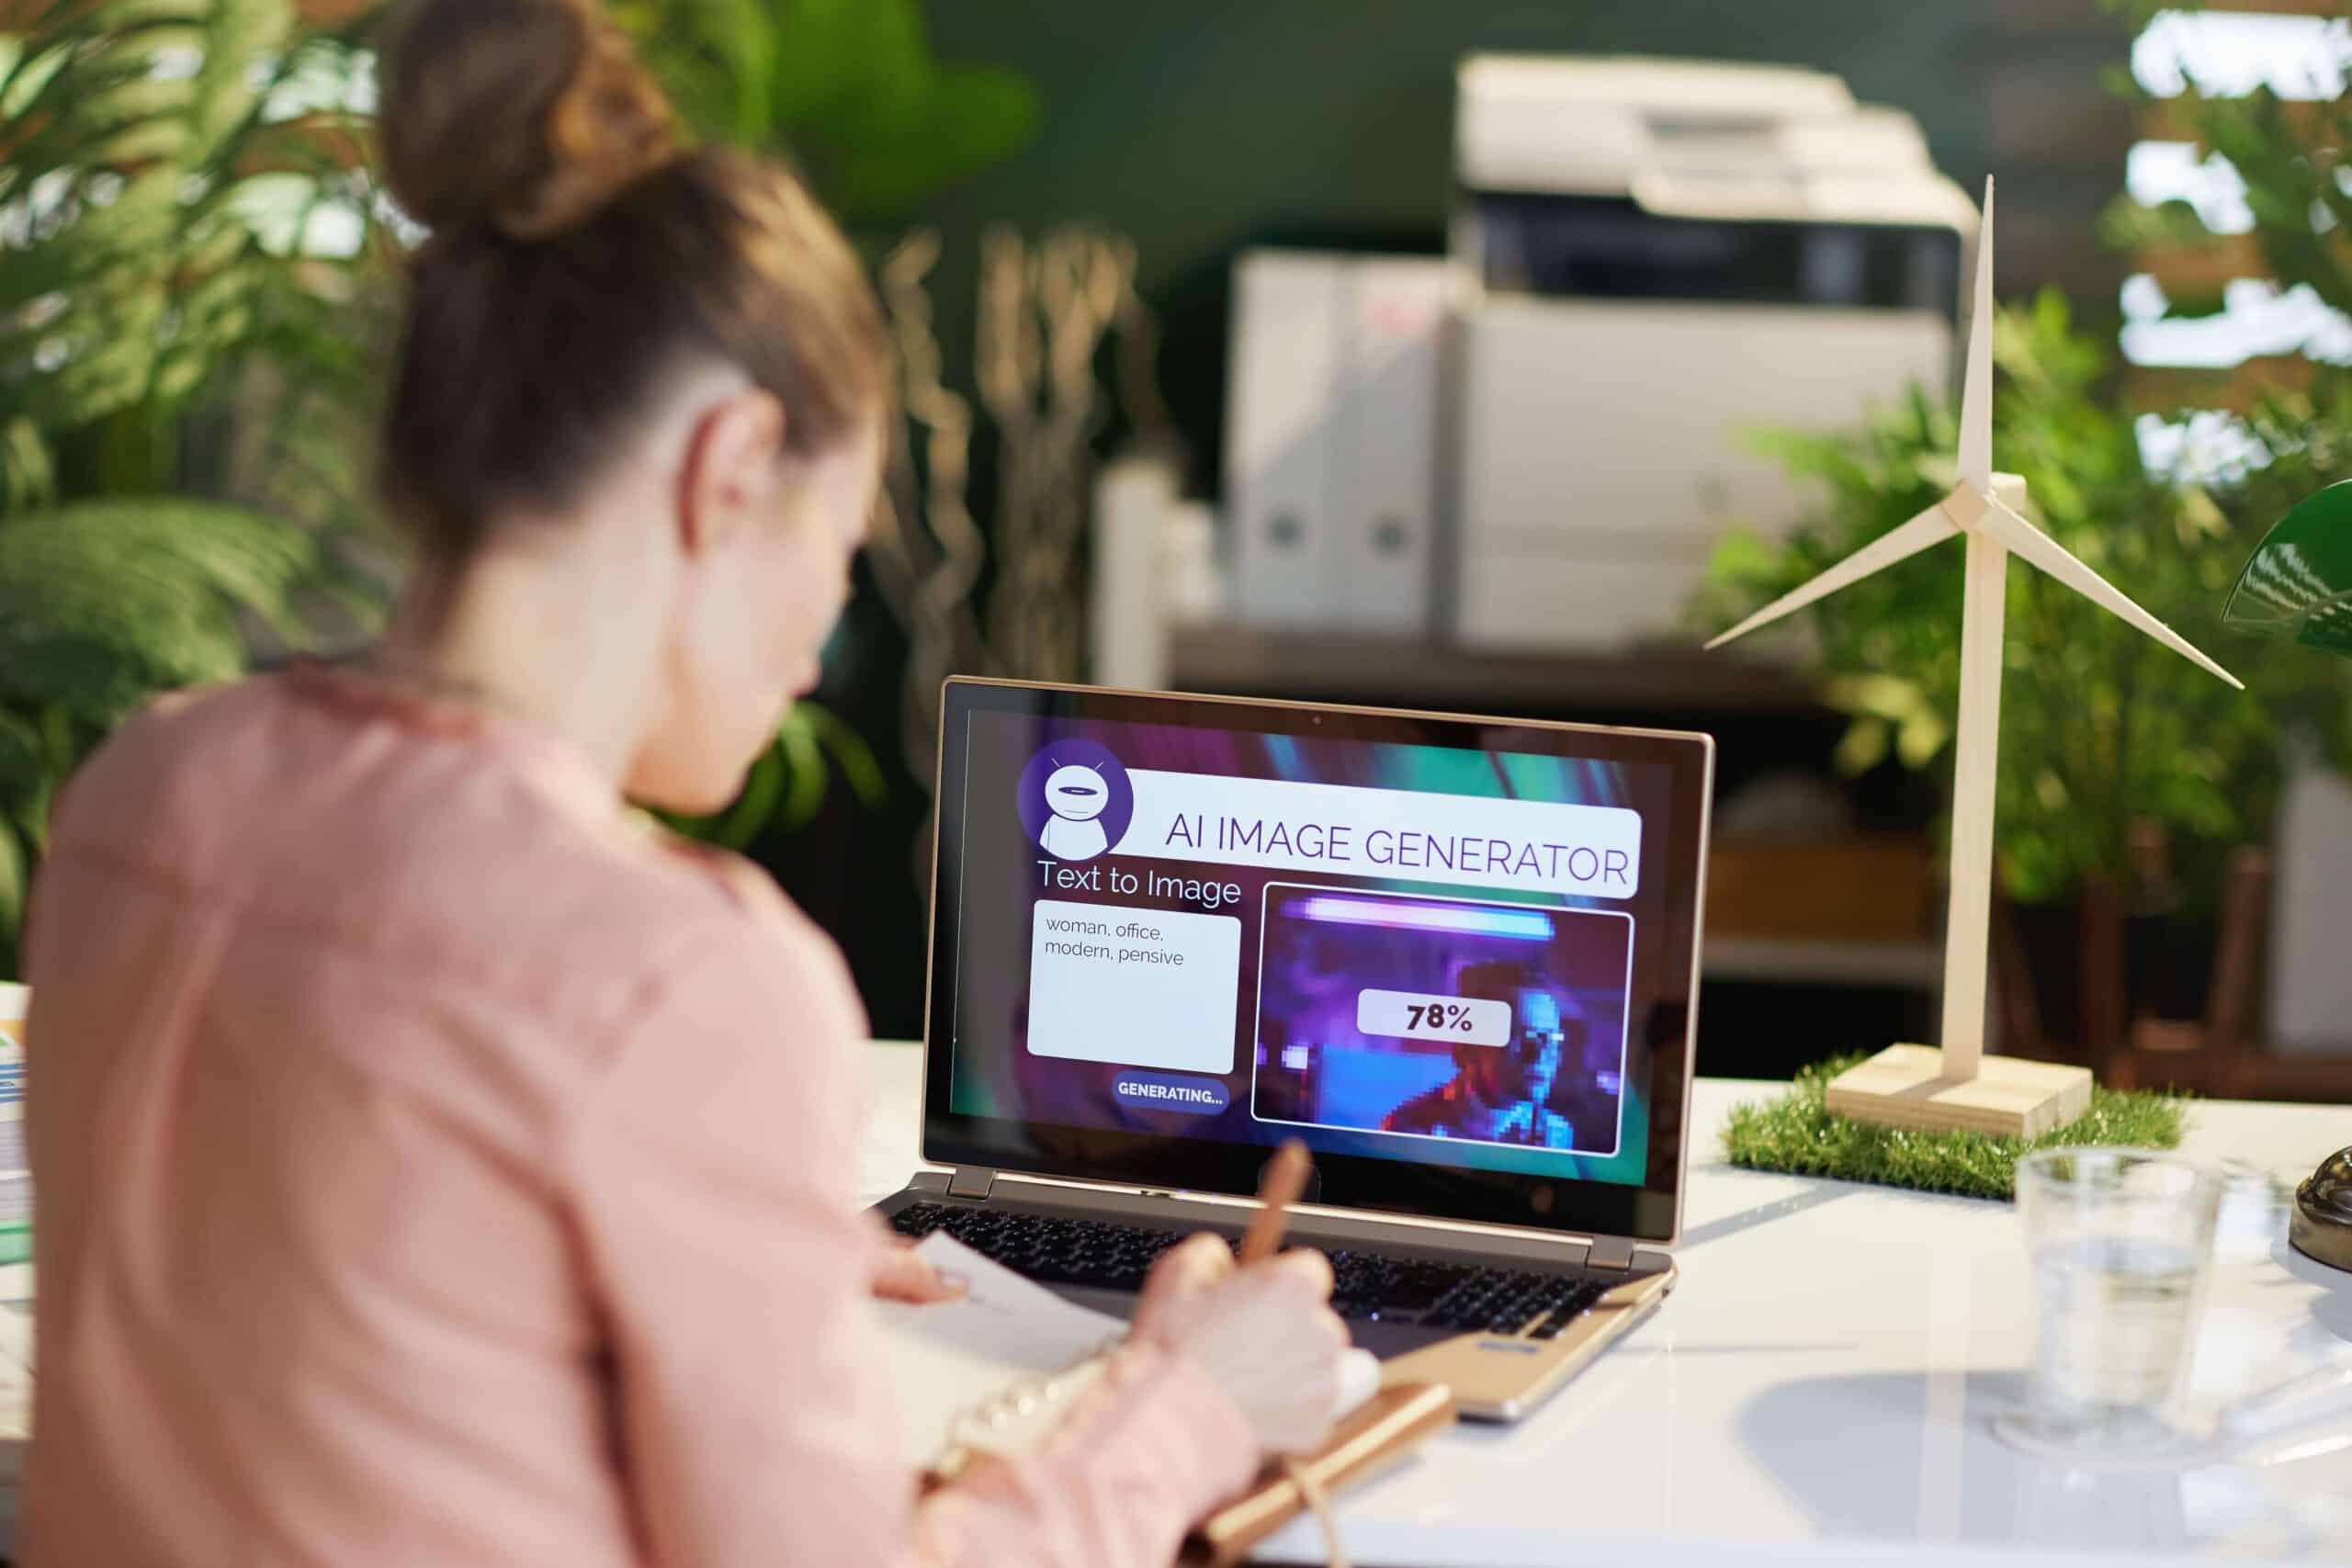 Een vrouw op kantoor, omringd door kamerplanten en een model windturbine, gebruikt een AI-beeldgenerator op haar laptop.